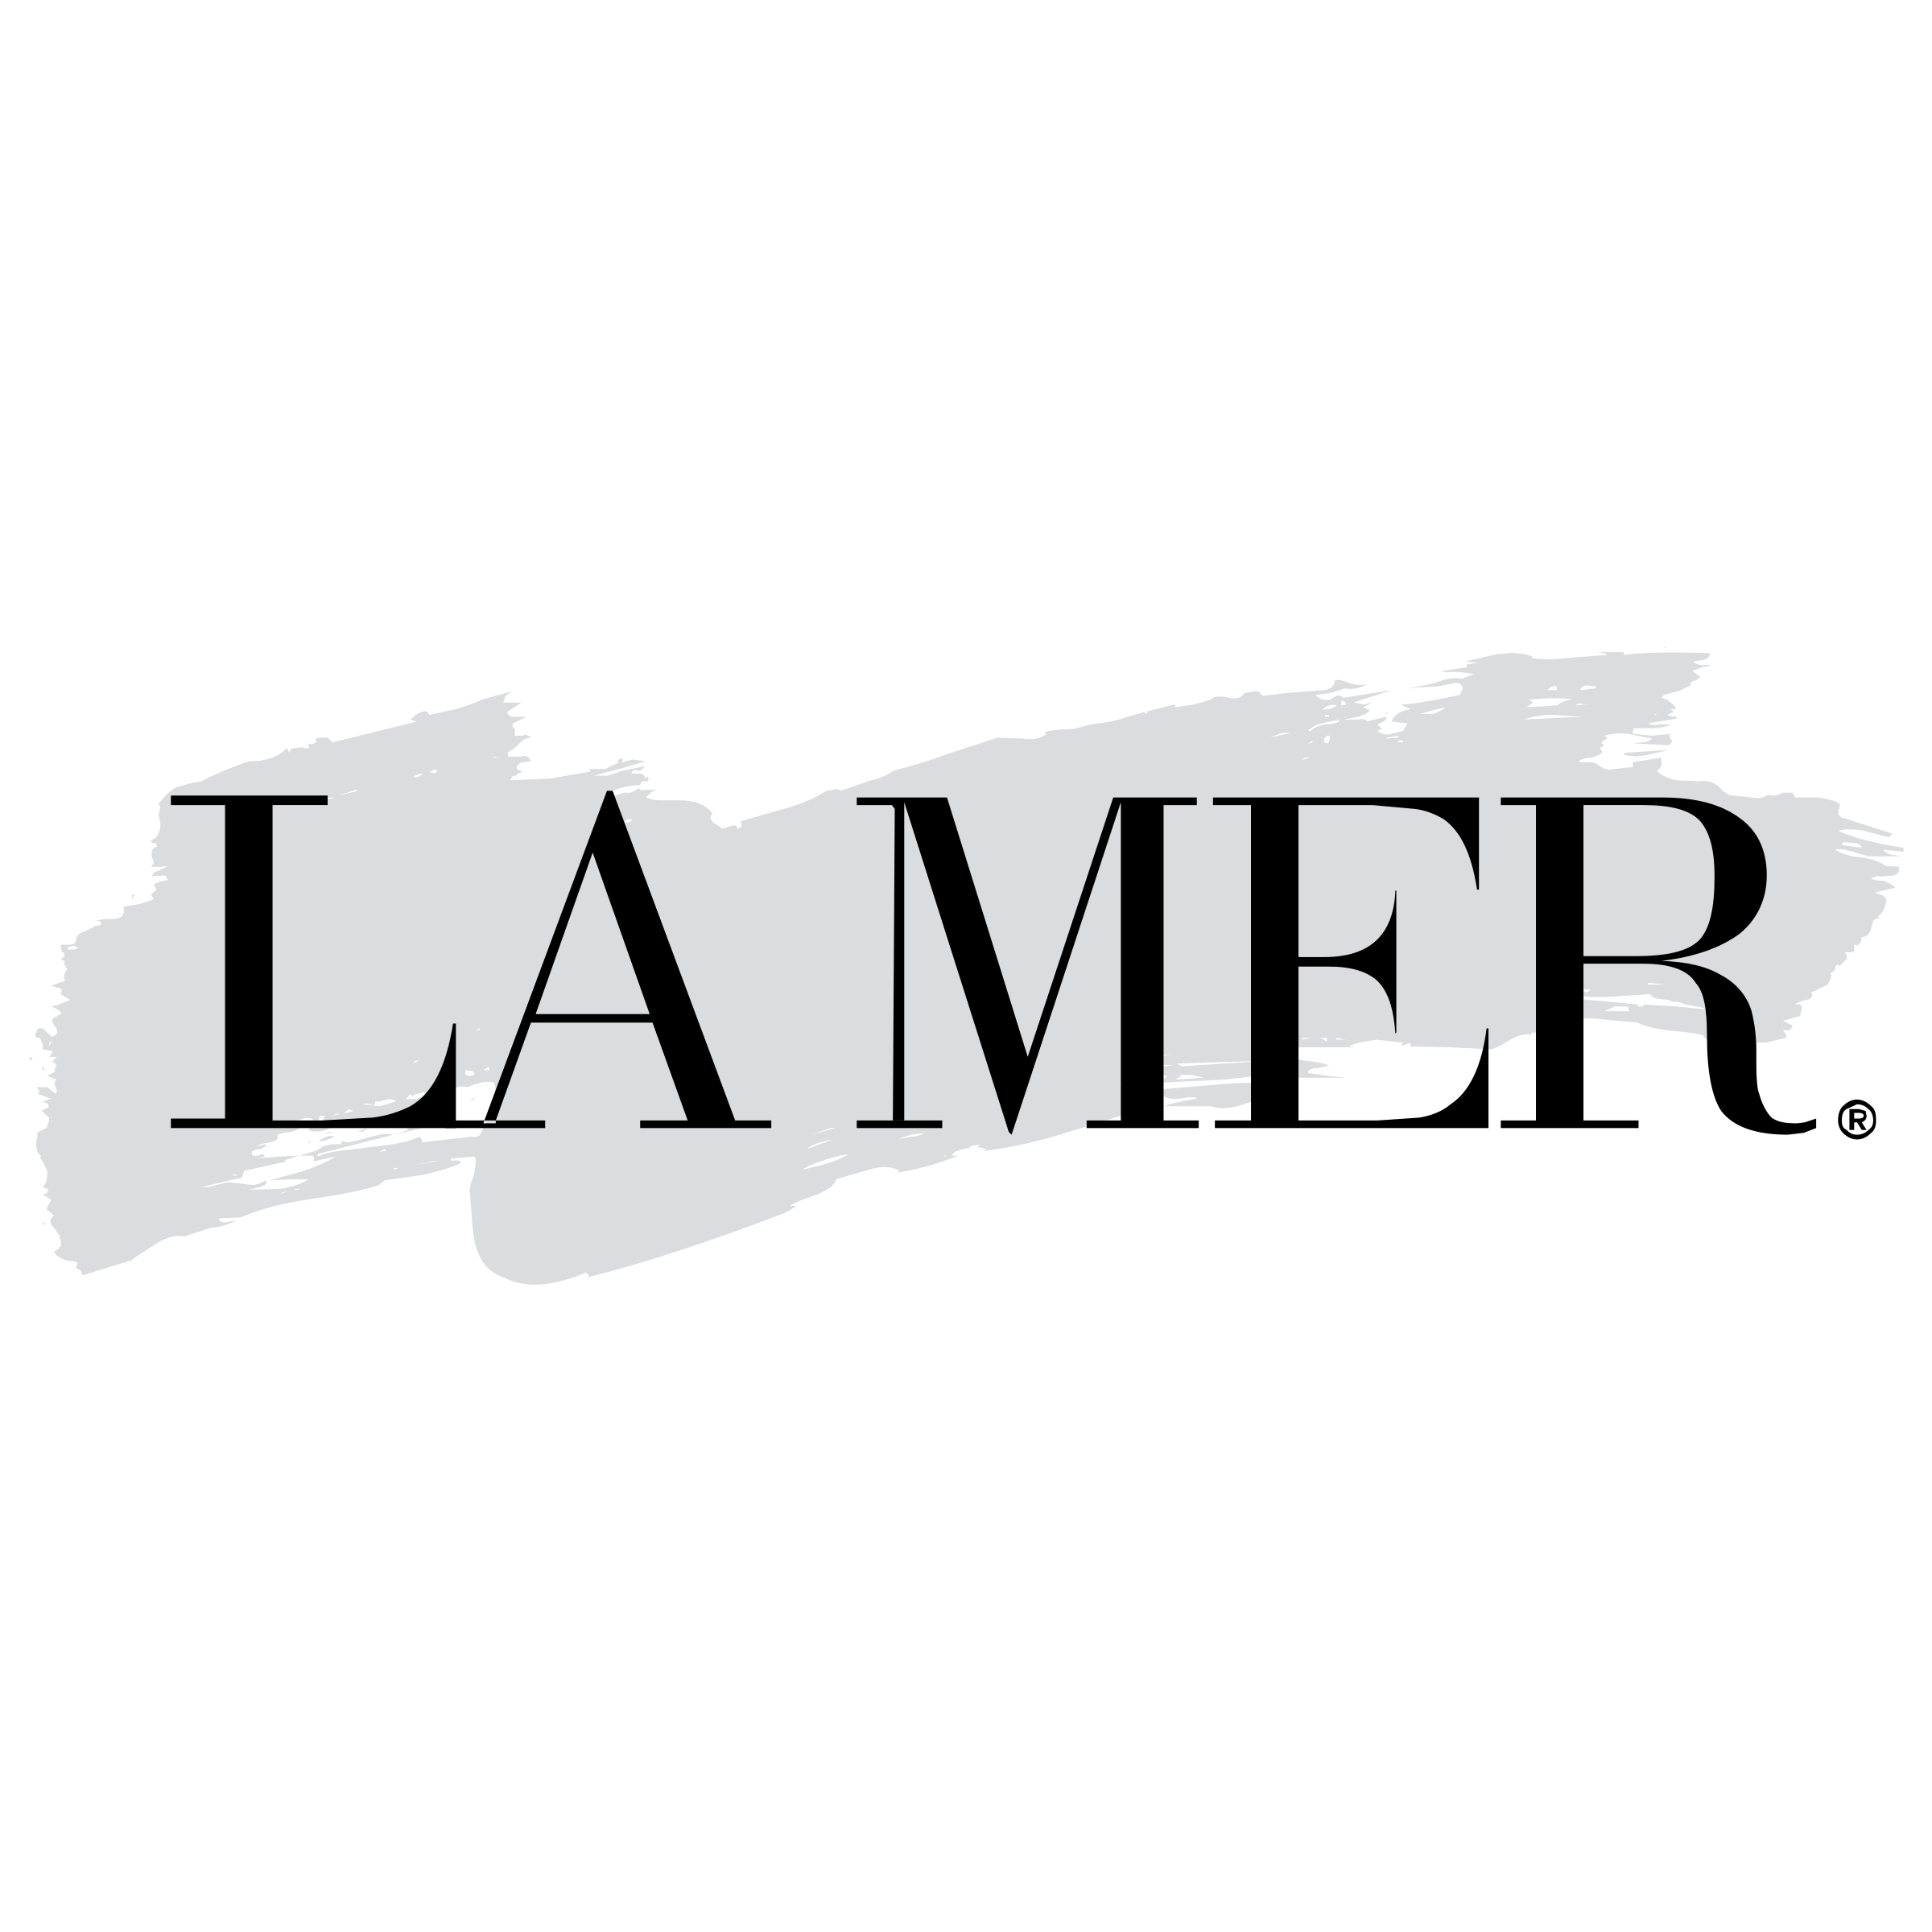 la-mer-logo-png-transparent.png